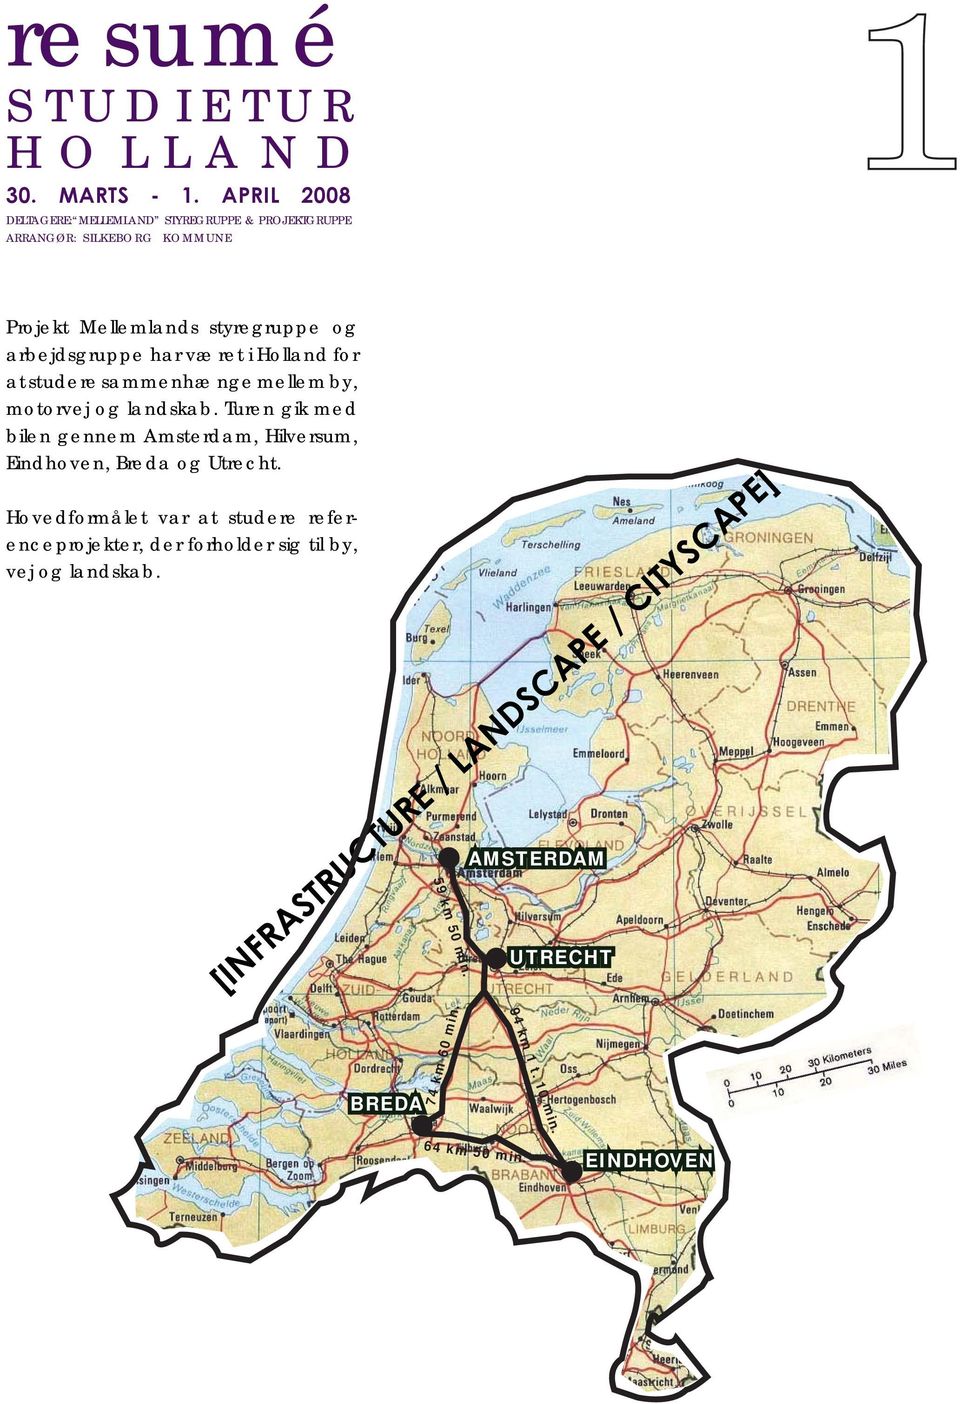 har været i Holland for at studere sammenhænge mellem by, motorvej og landskab.